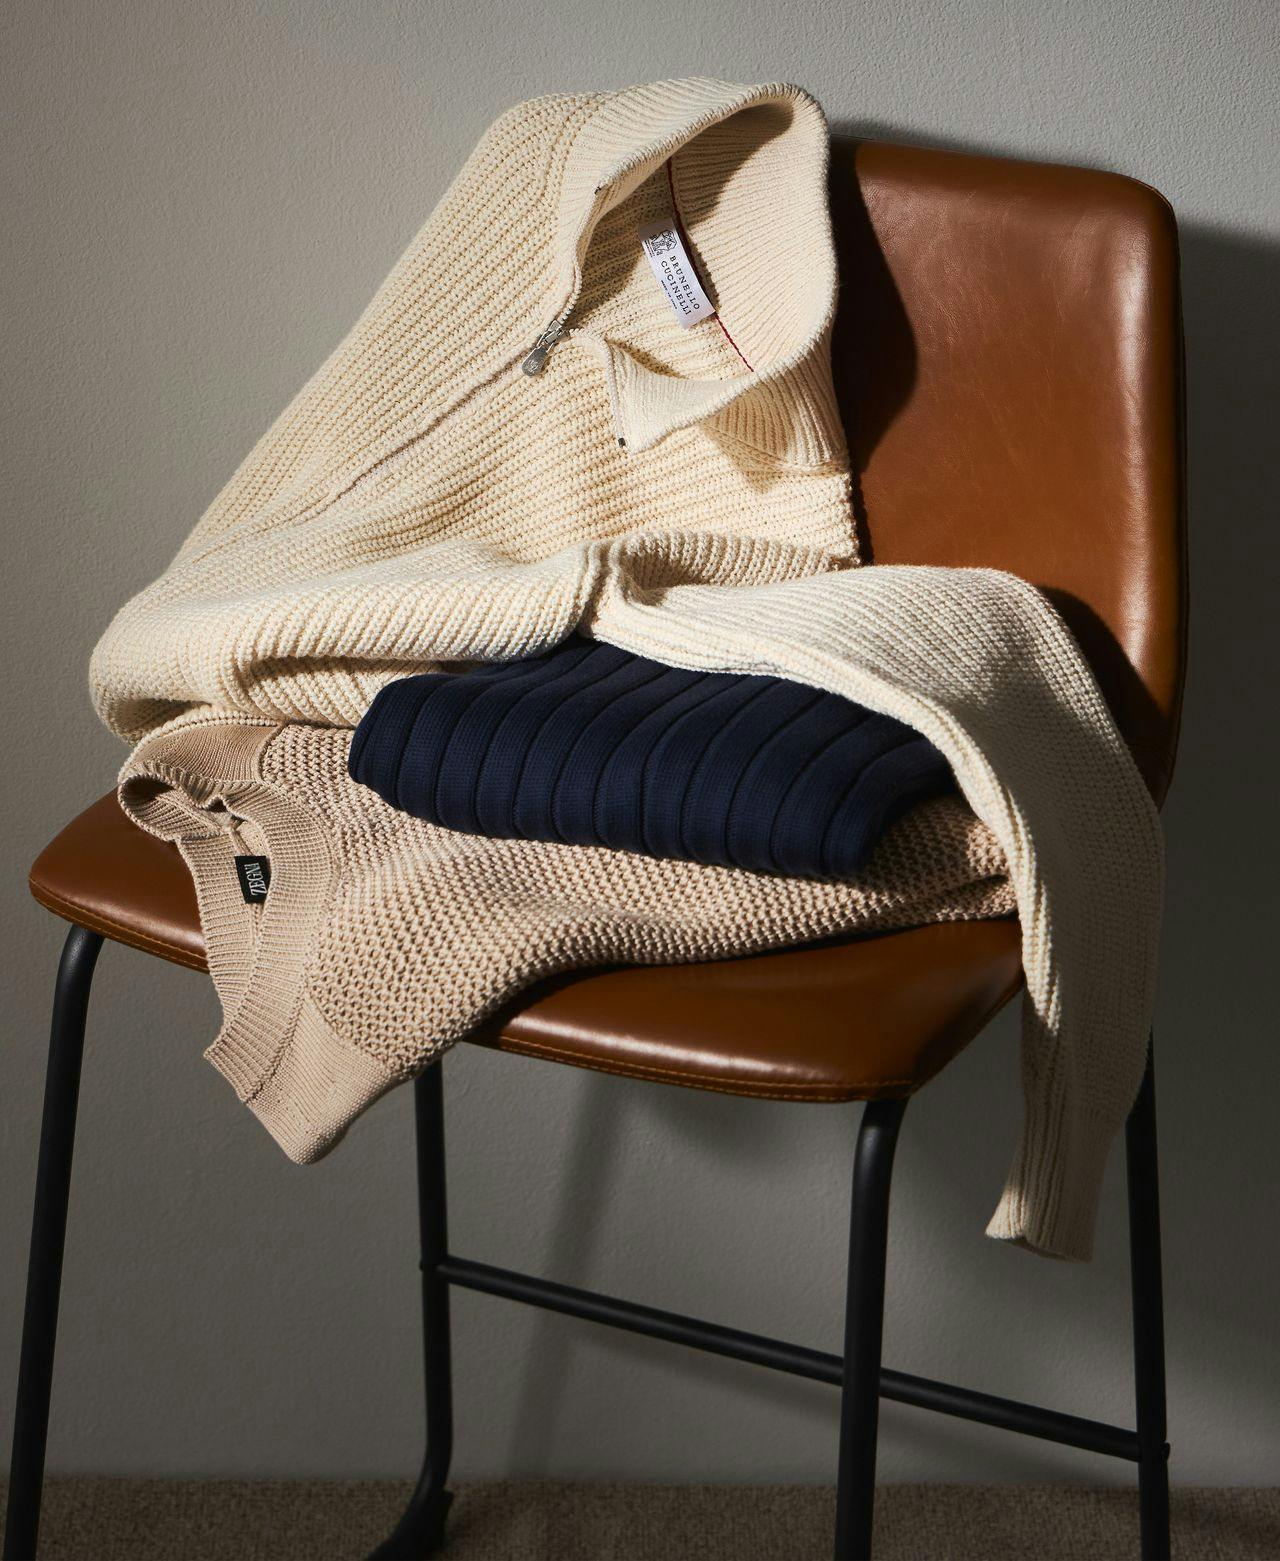 trois pulls tricotés pliés sur une chaise marron